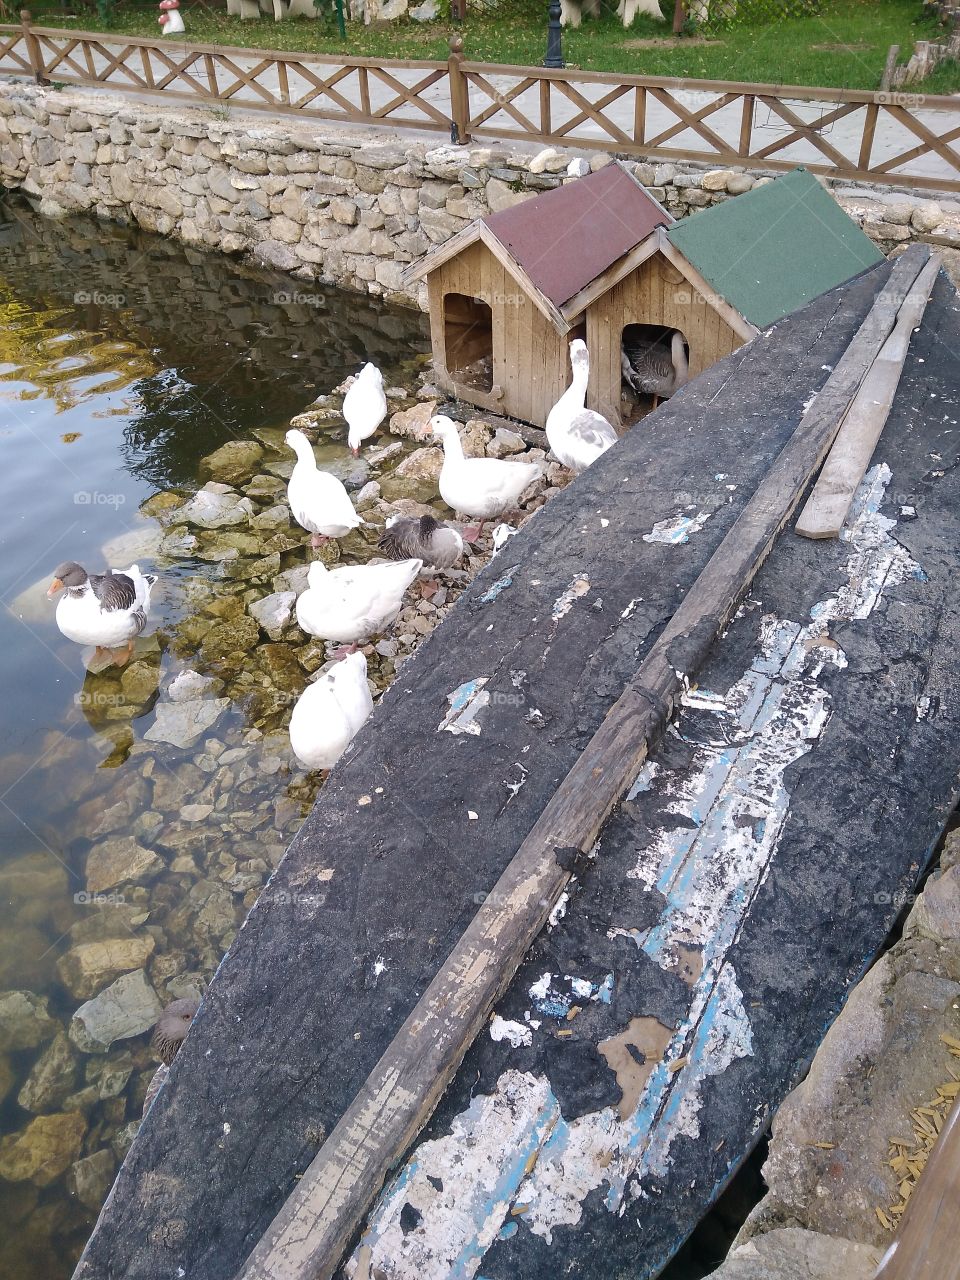 Feeding ducks . 2017